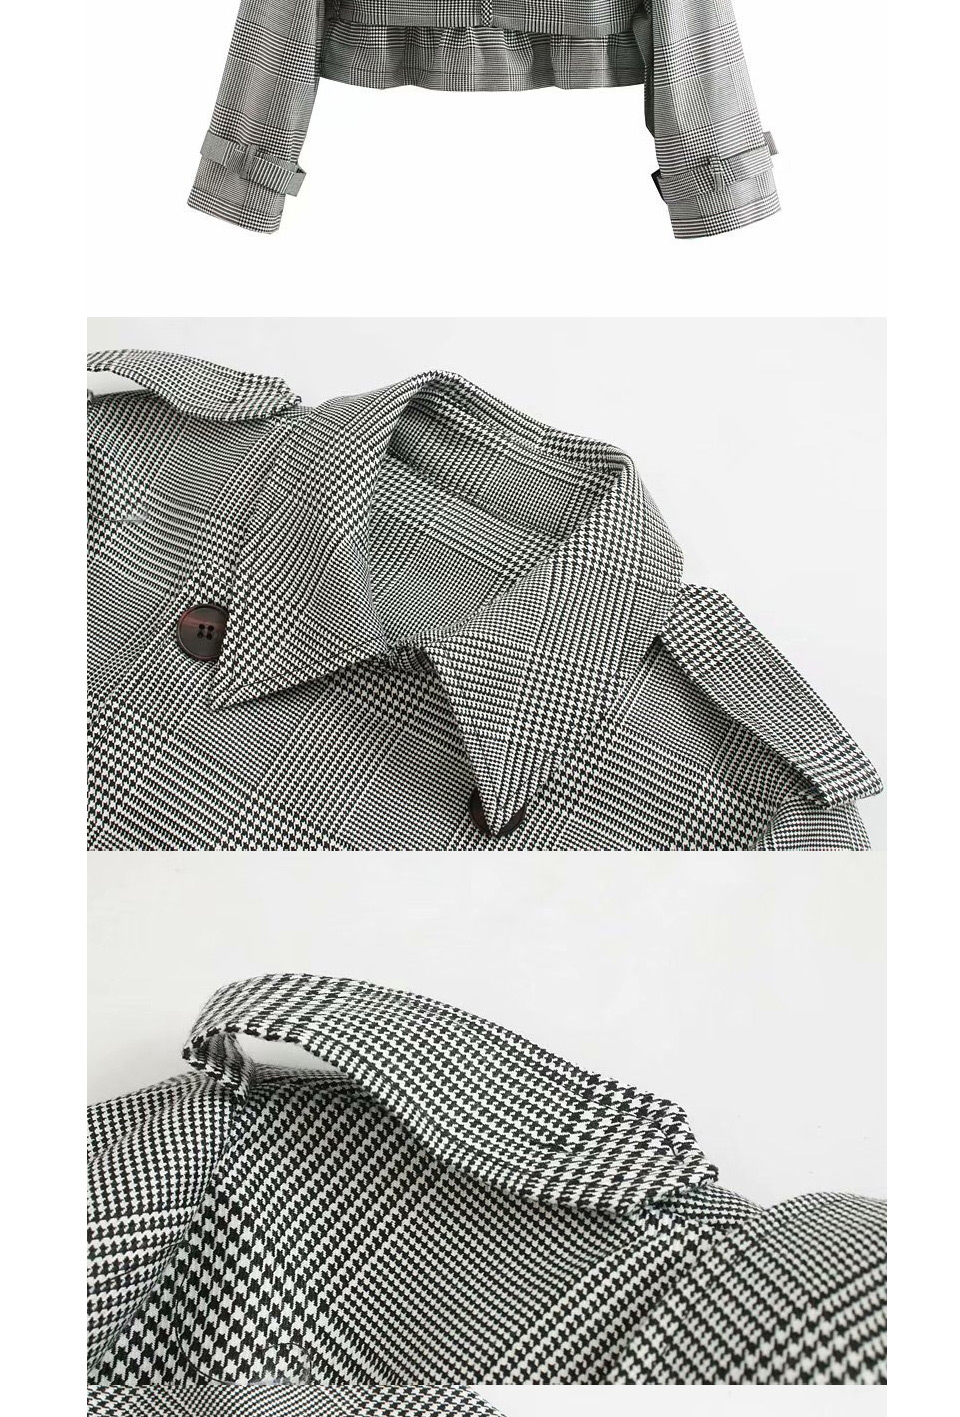 Fashion Gray Plaid Belt Short Coat,Coat-Jacket